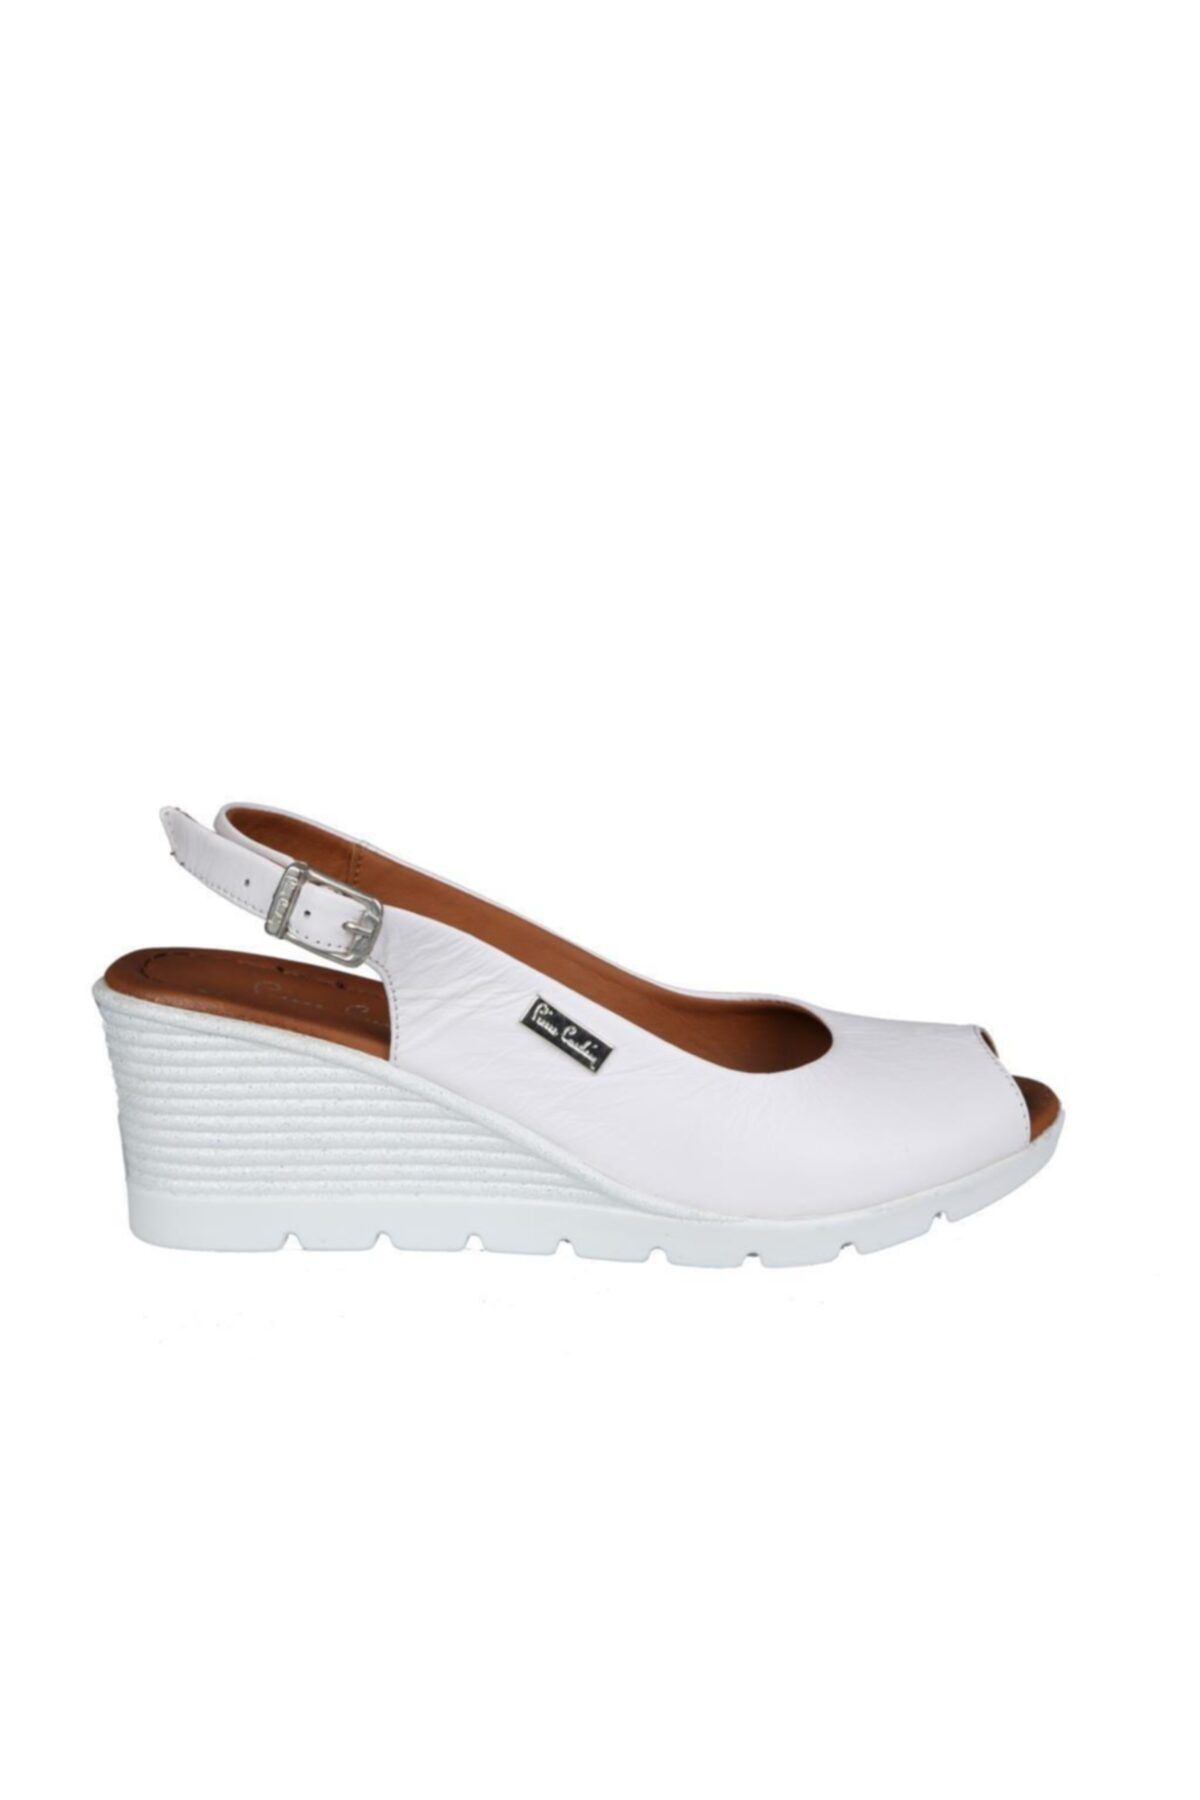 Pierre Cardin Pc-6031 Beyaz Kadın Topuklu Ayakkabı